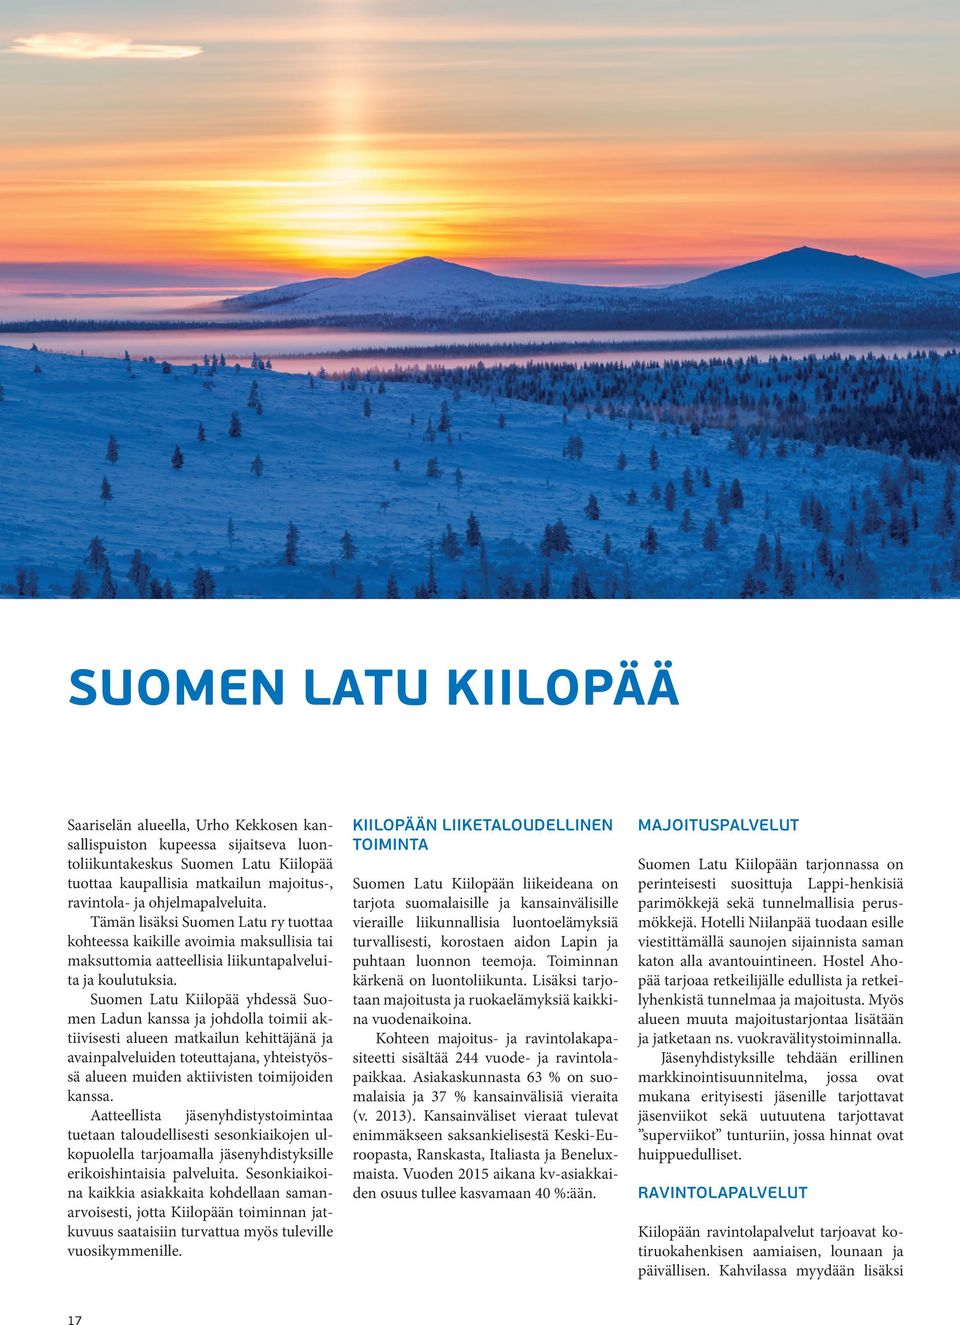 Suomen Latu Kiilopää yhdessä Suomen Ladun kanssa ja johdolla toimii aktiivisesti alueen matkailun kehittäjänä ja avainpalveluiden toteuttajana, yhteistyössä alueen muiden aktiivisten toimijoiden